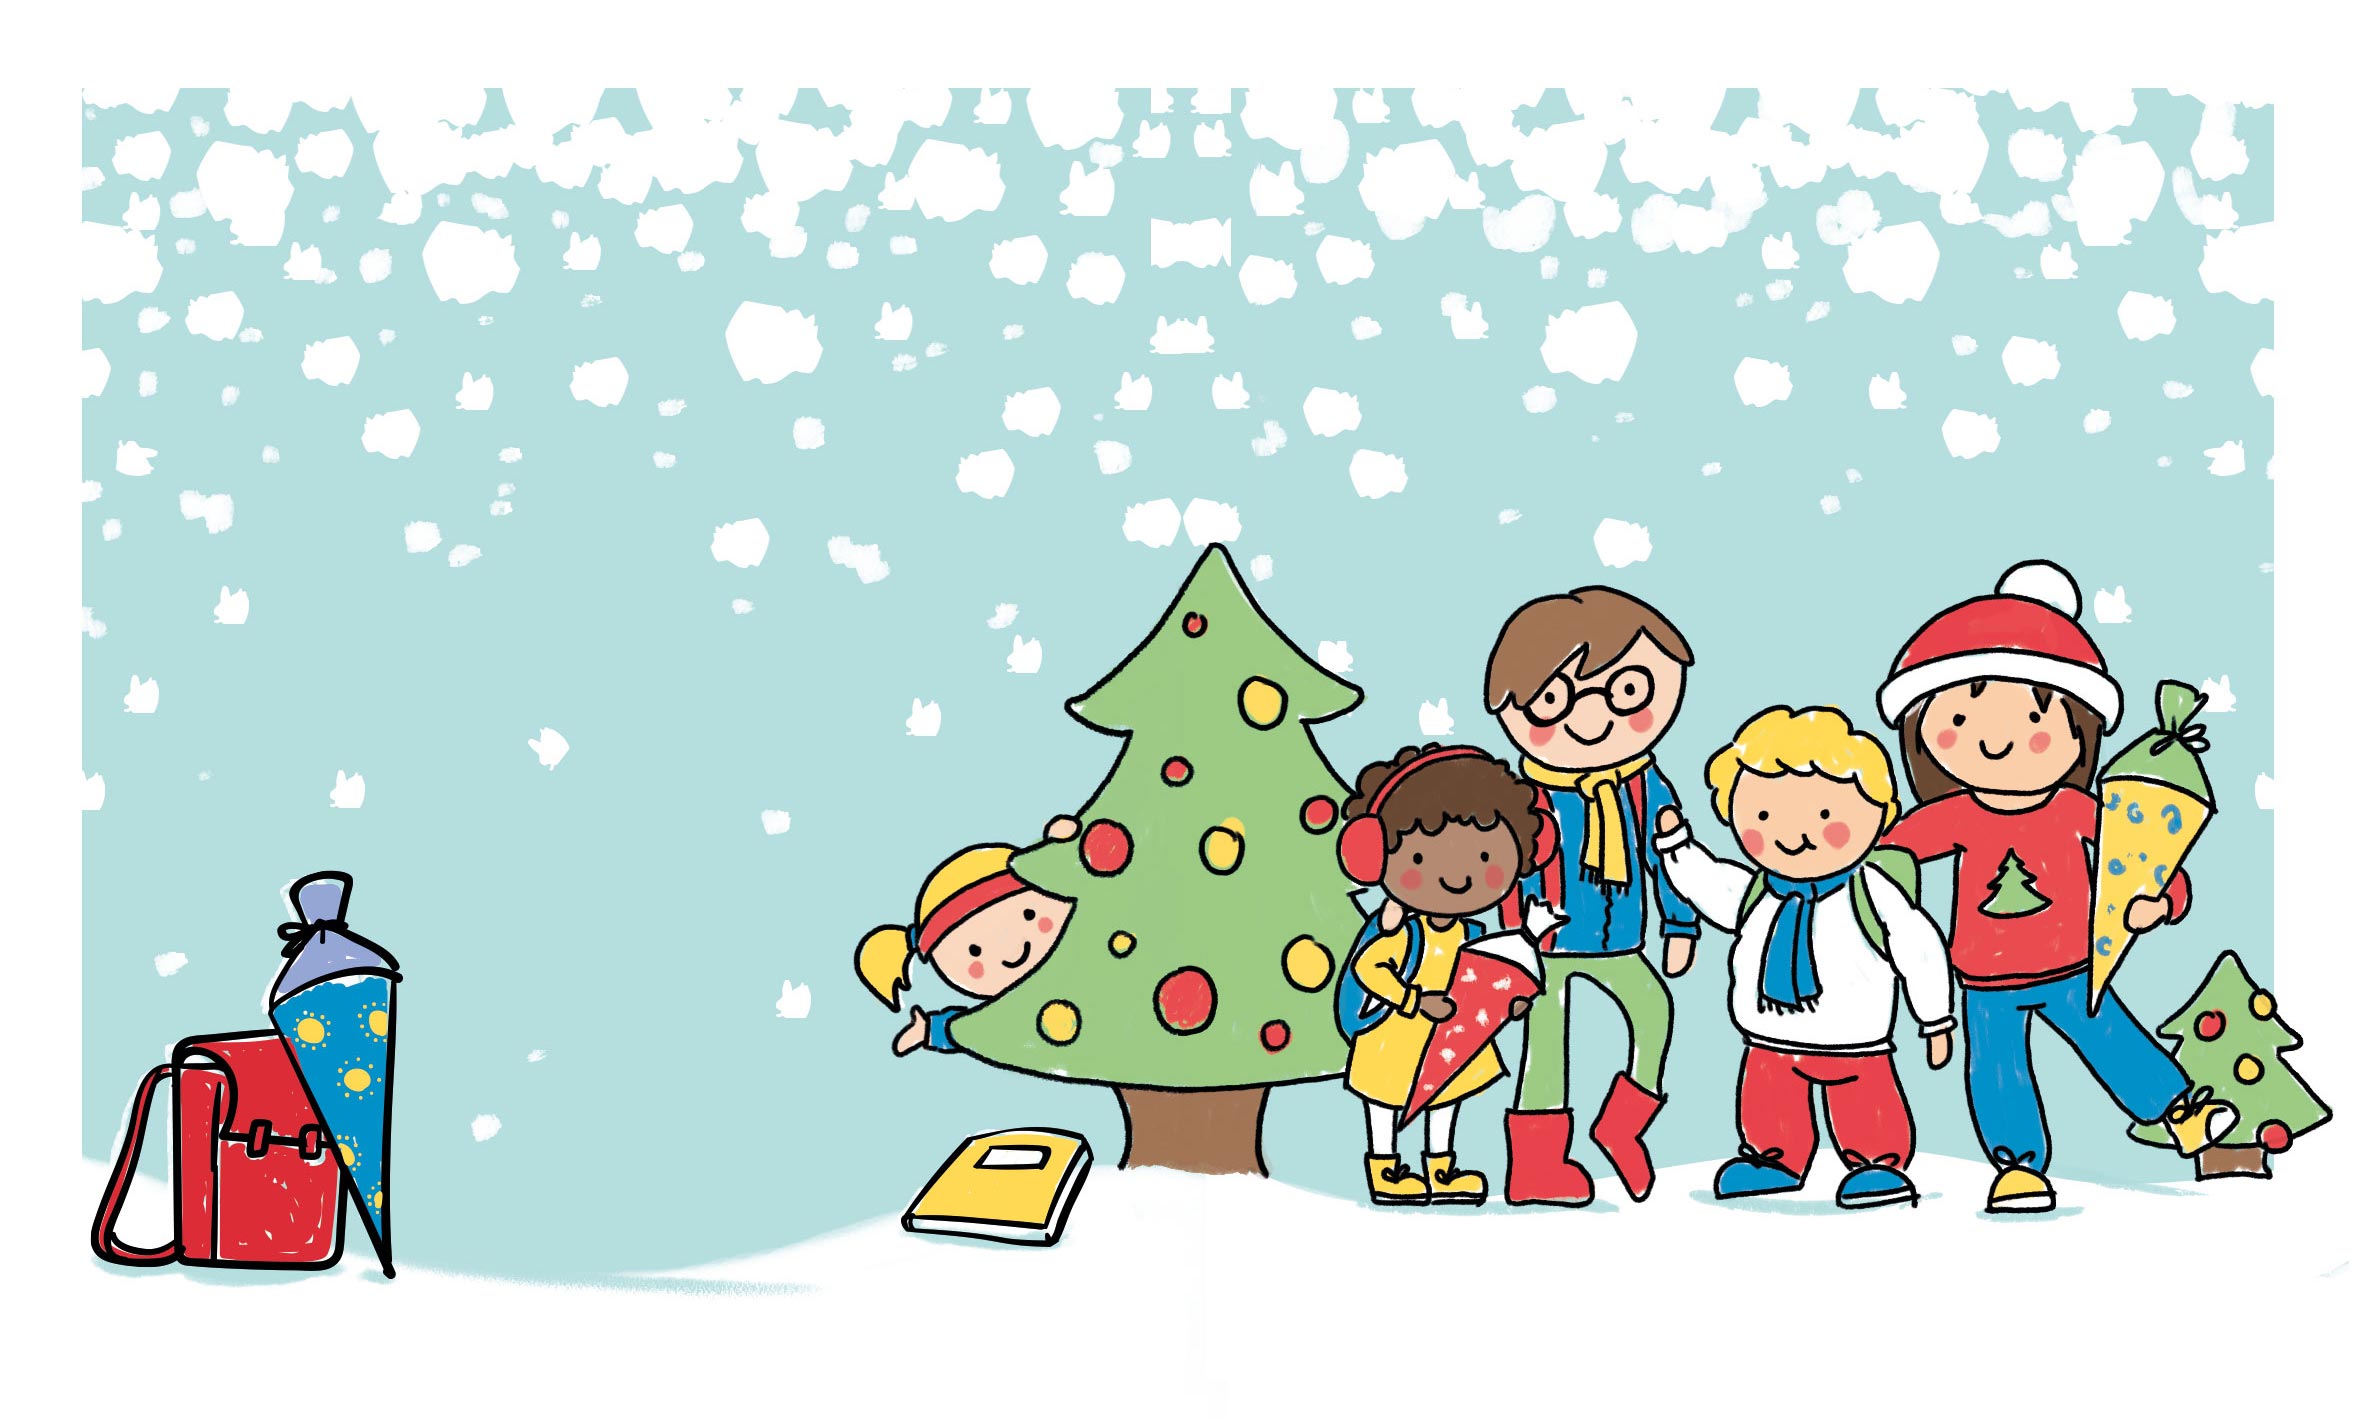 Eine bunt illustrierte Weihnachtskarte der Bunte Münchner Kindl München. Illustration einer Schneelandschaft mit Weihnachtsbäumen, Kindl in Winterkleidung und Schulsachen.